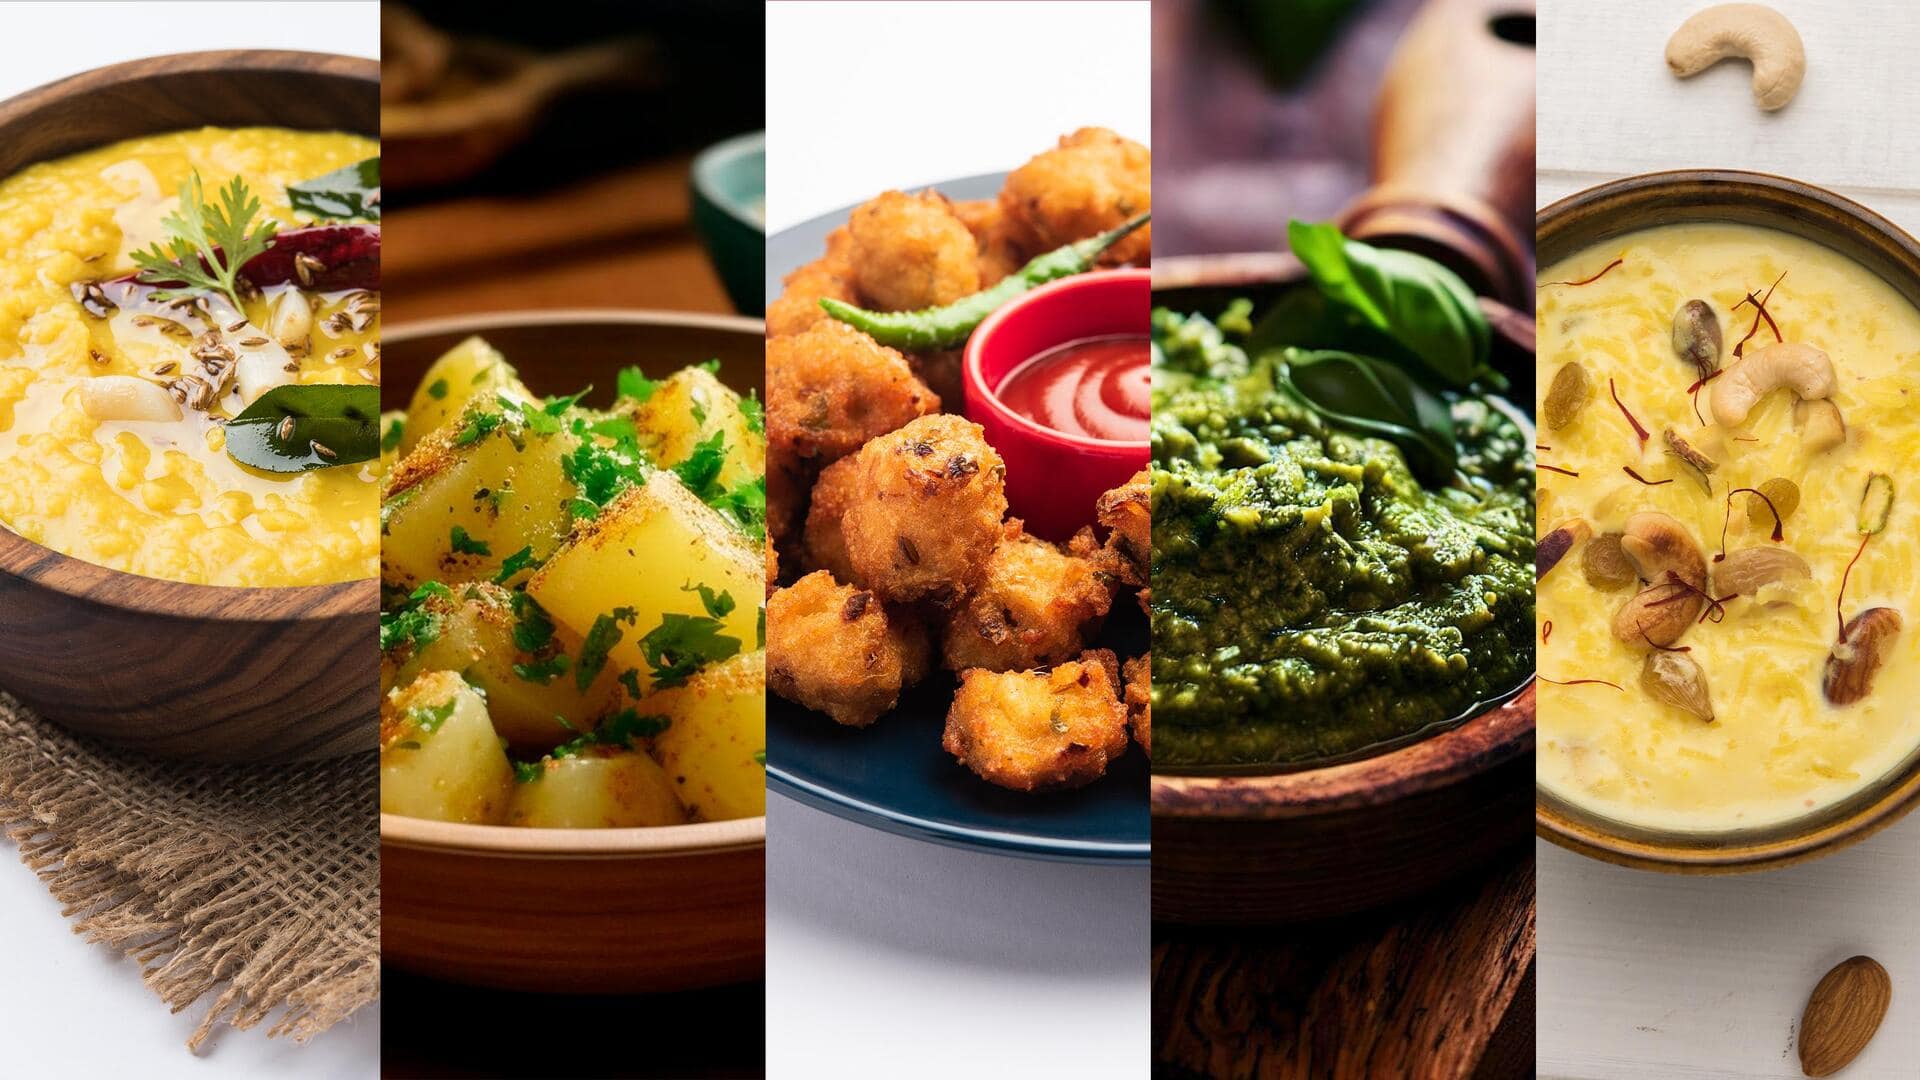 ये हैं उत्तराखंड के 5 लोकप्रिय गढ़वाली व्यंजन, जानिए घर पर बनाने की रेसिपी